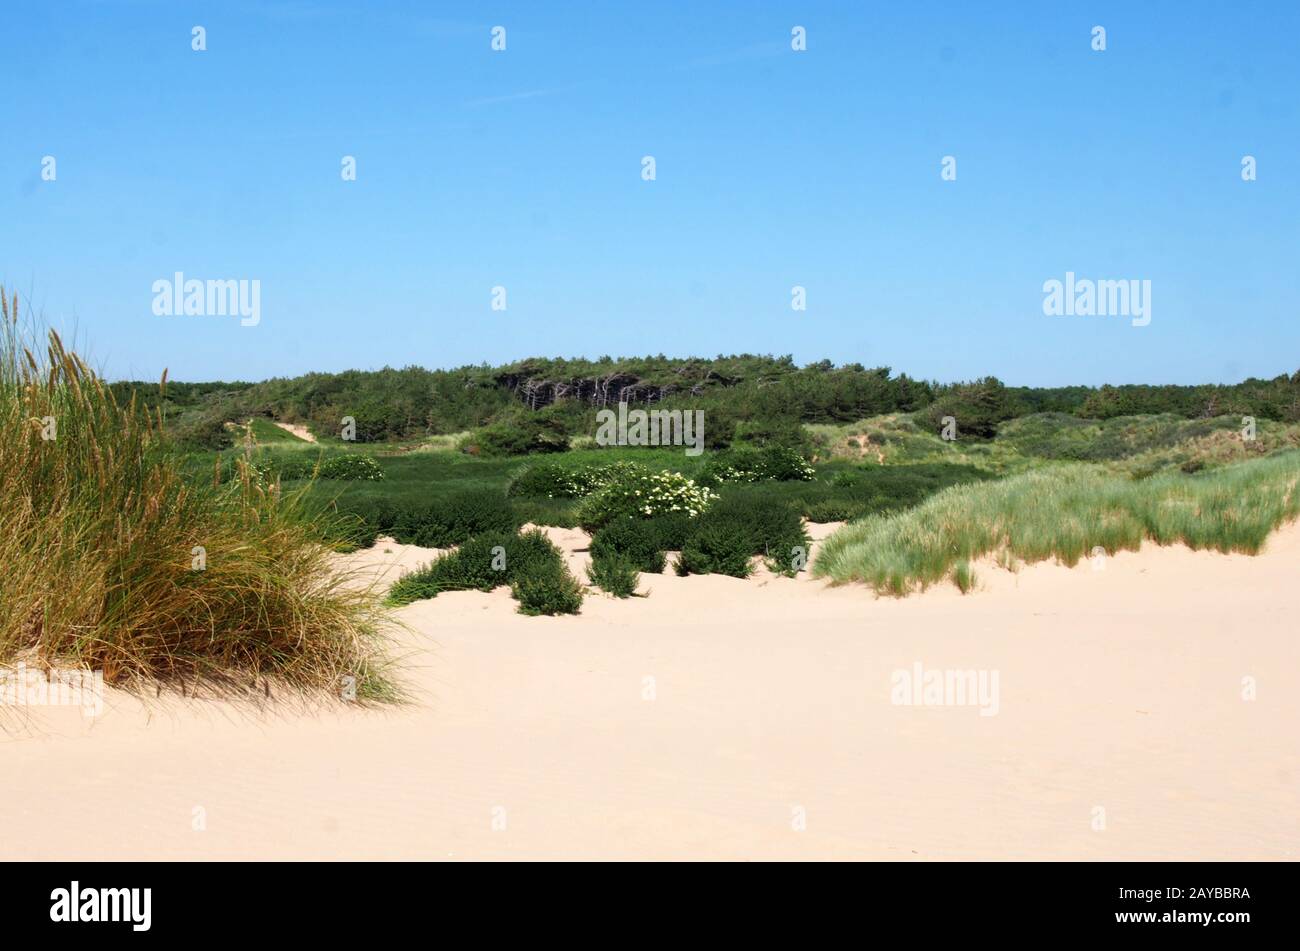 la spiaggia di formby merseyside con dune ricoperte di erba di montone e vegetazione con paesaggio forestale in lontananza su una riva Foto Stock